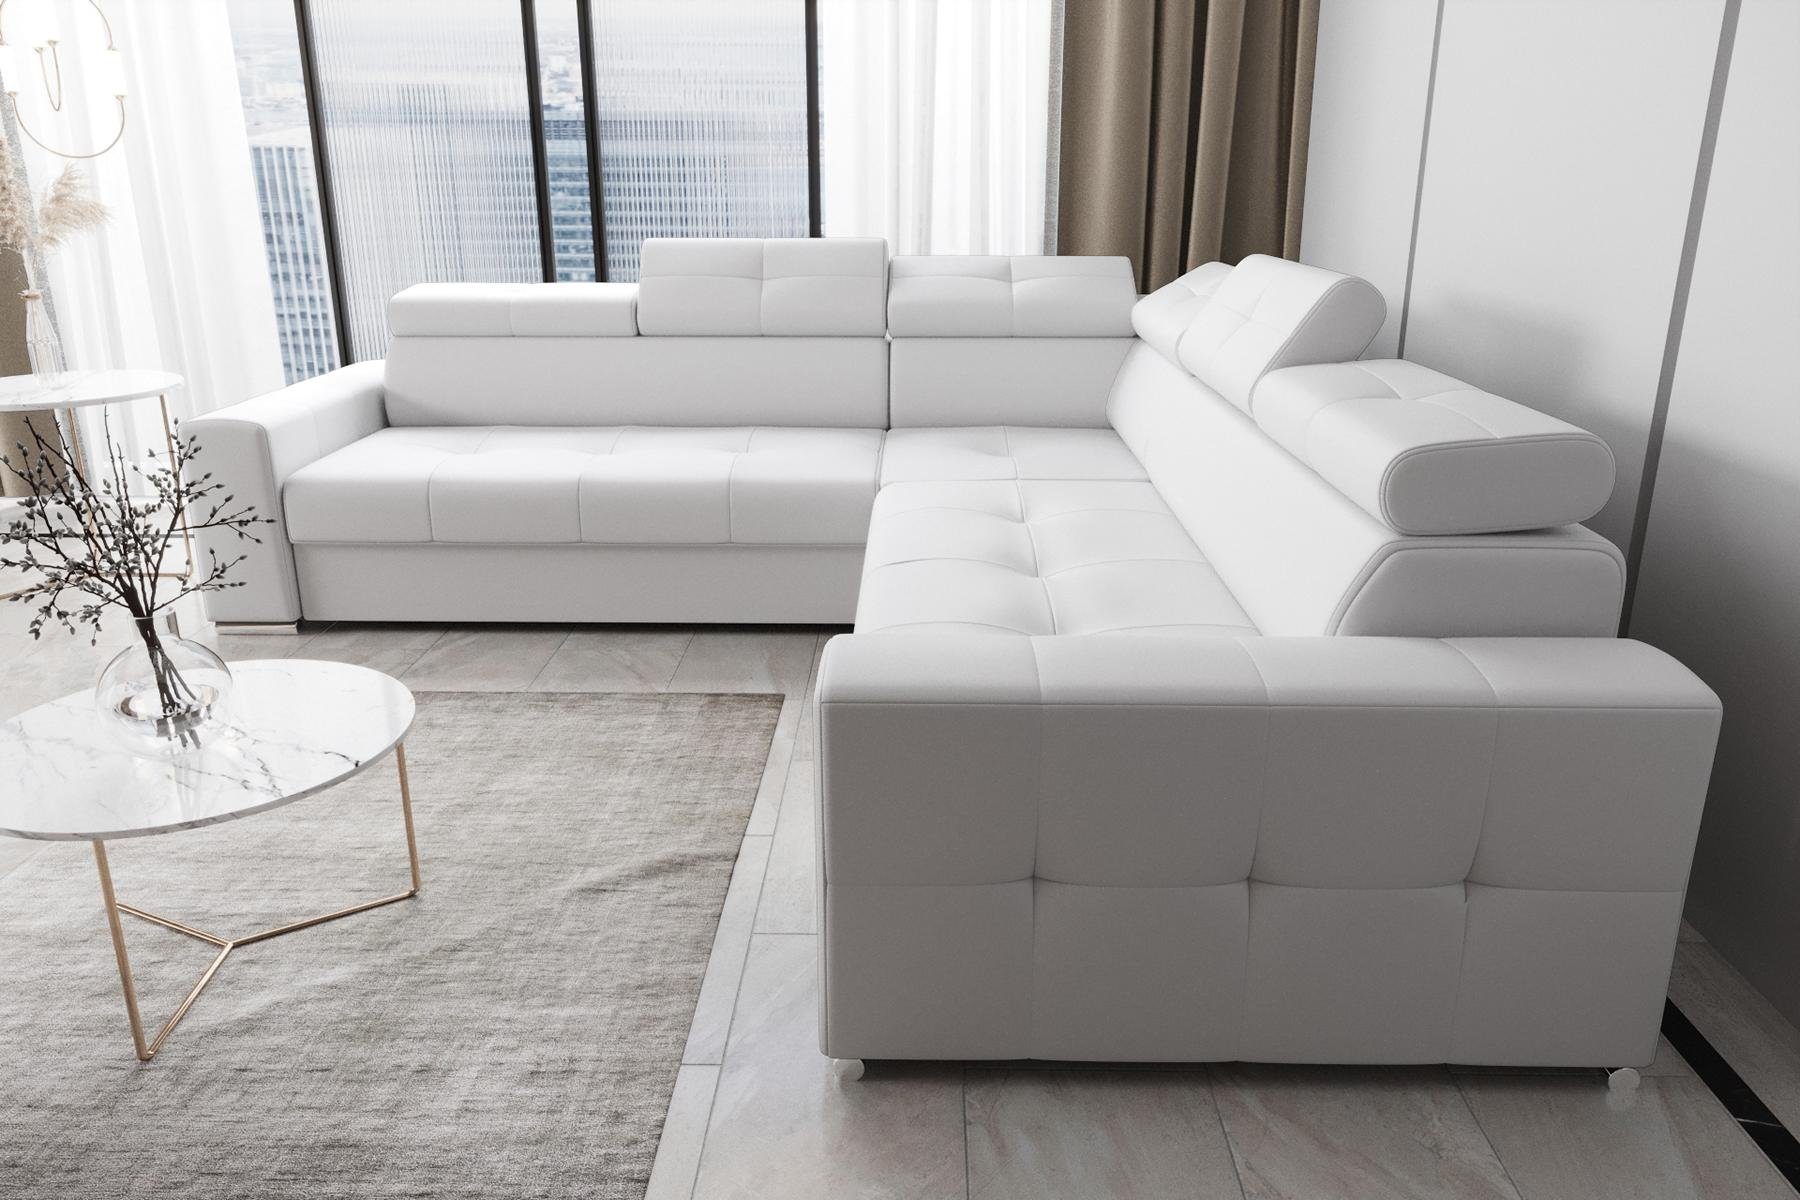 JVmoebel Ecksofa Wohnzimmer Textil Leder Luxus L Form Modern Ecksofa Couch, Made in Europe Weiß